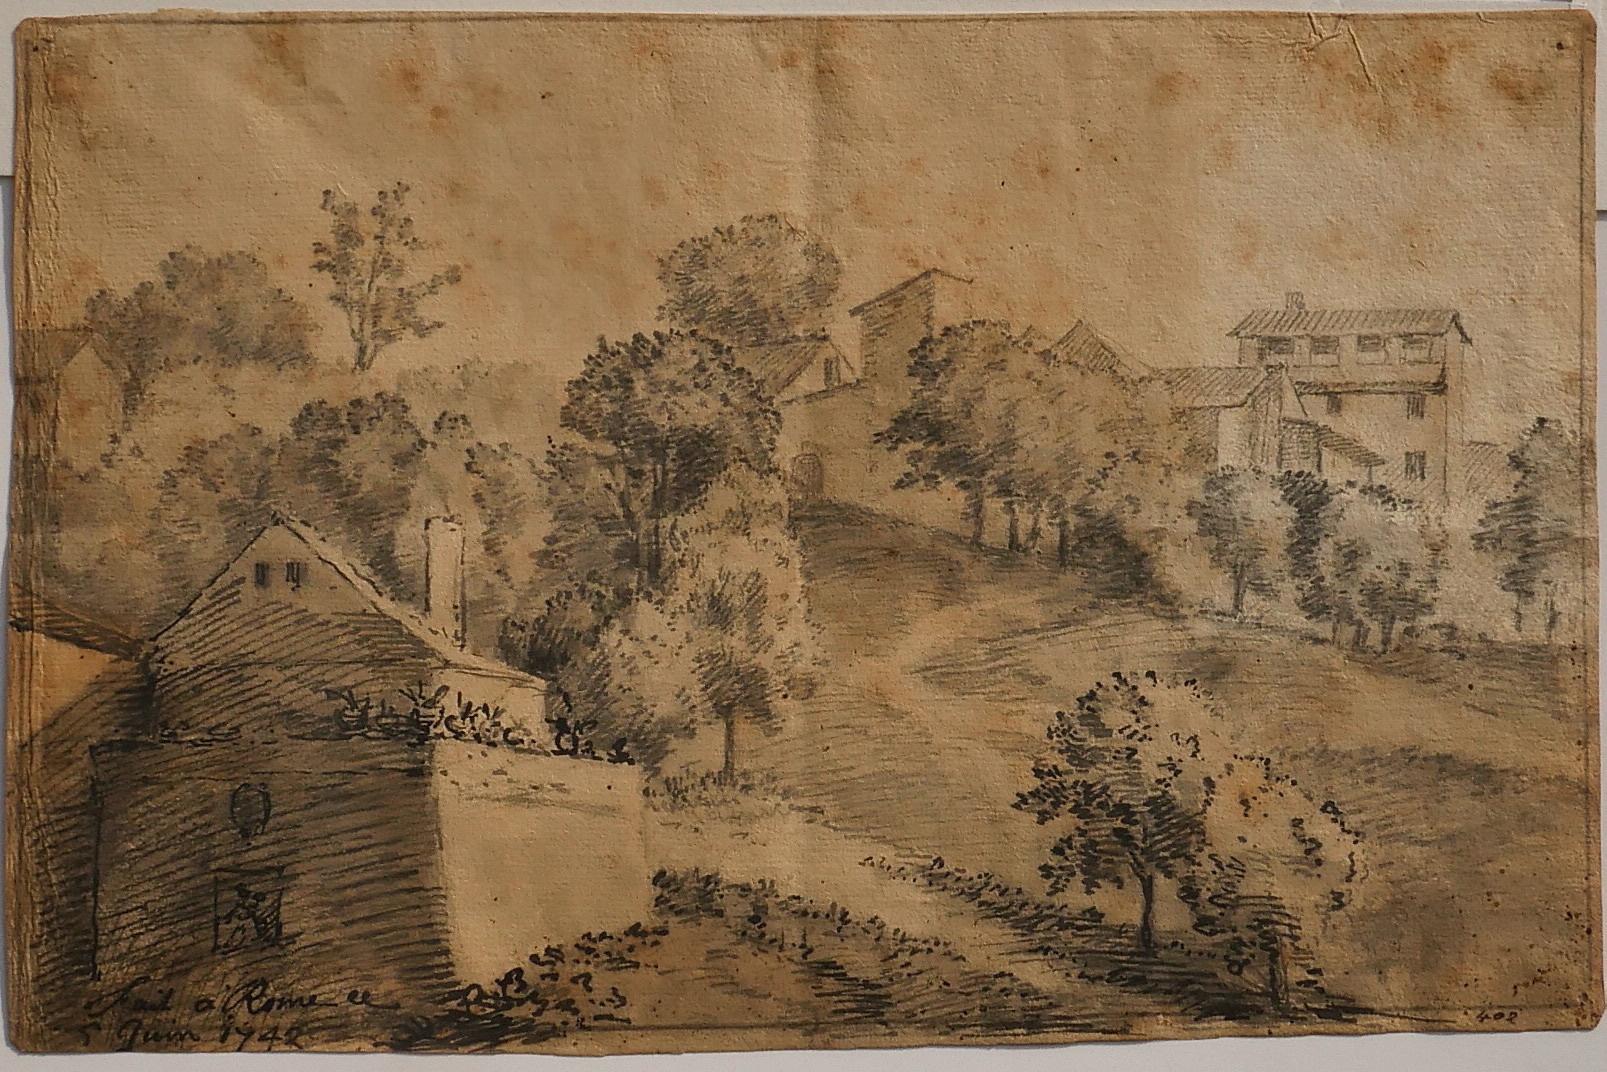 Rom ist ein wunderschönes Kunstwerk von Jan Peter Verdussen aus dem Jahr 1742.

Bis auf einige Bleistiftspuren und Spuren von Siegellack auf der Rückseite sowie diffuse Stockflecken in gutem Zustand.

Handsigniert und datiert am unteren rechten